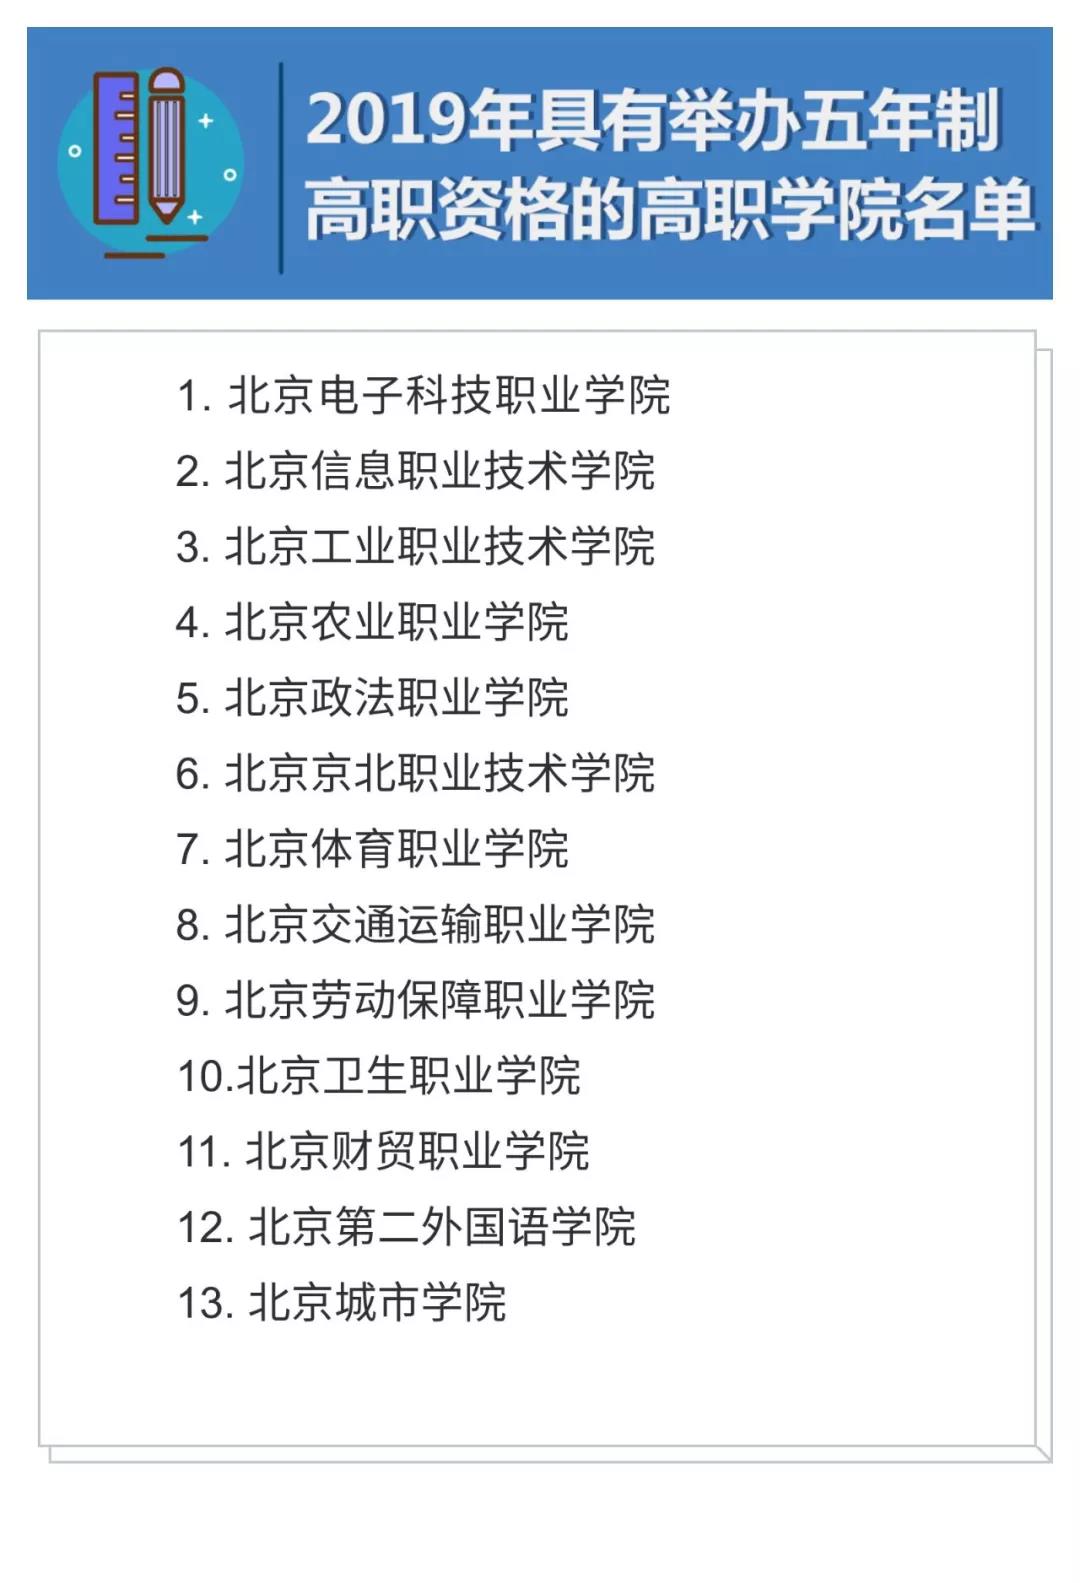 重磅收藏：北京市各区2019年具有招生资格的高级中等学校名单
                
                